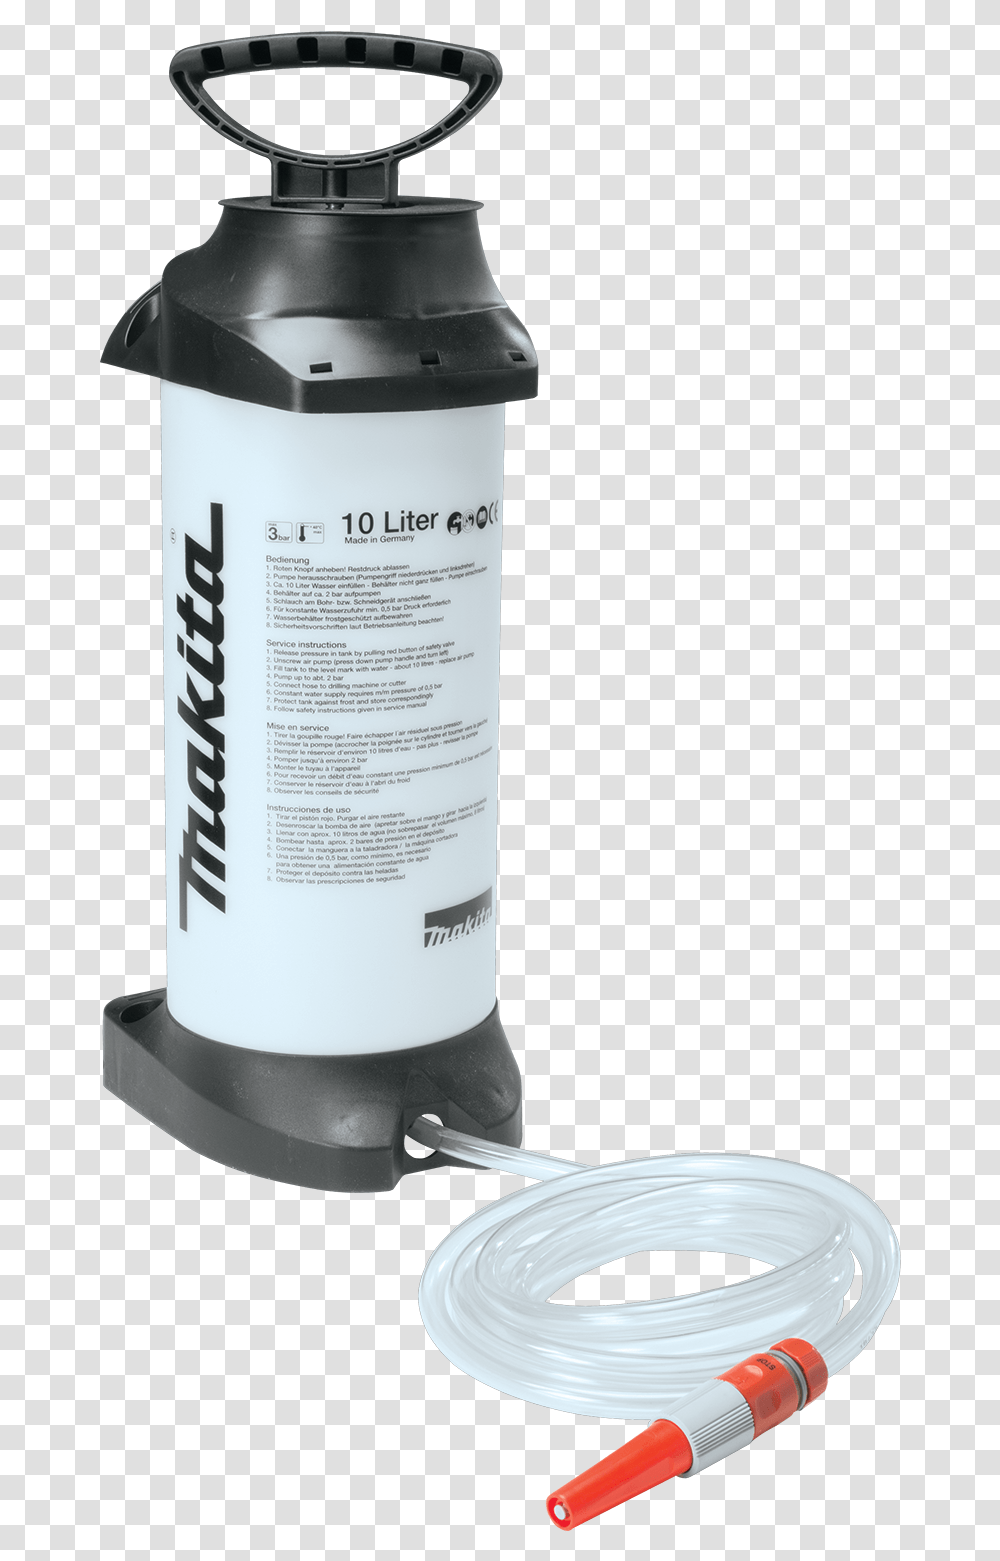 394 Pressurized Water Tank, Shaker, Bottle, Cylinder, Mixer Transparent Png